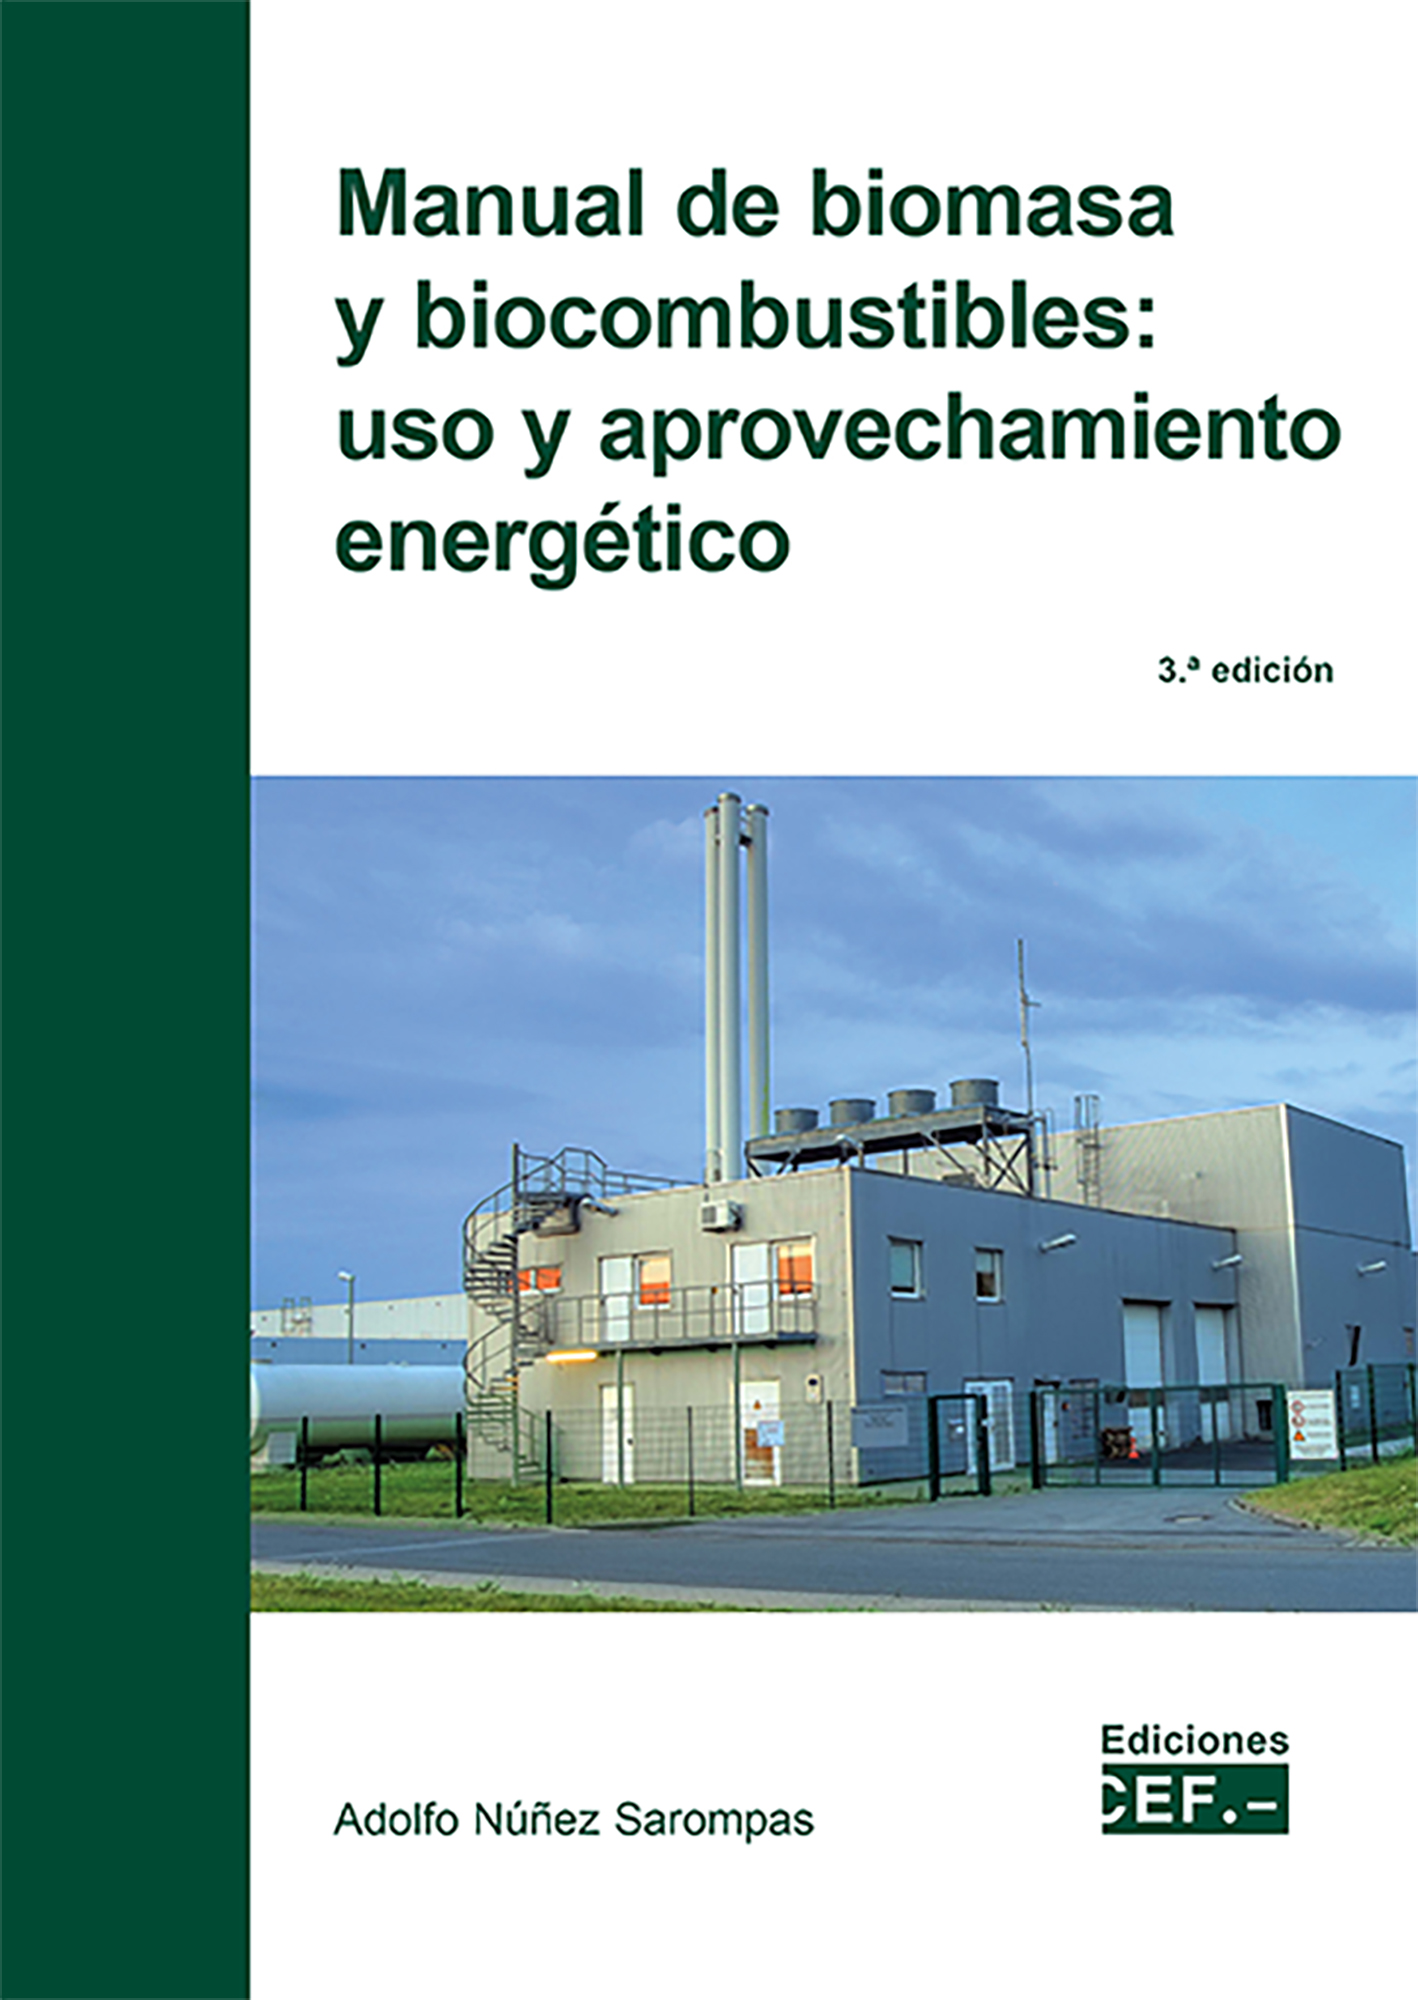 Manual de biomasa y biocombustible